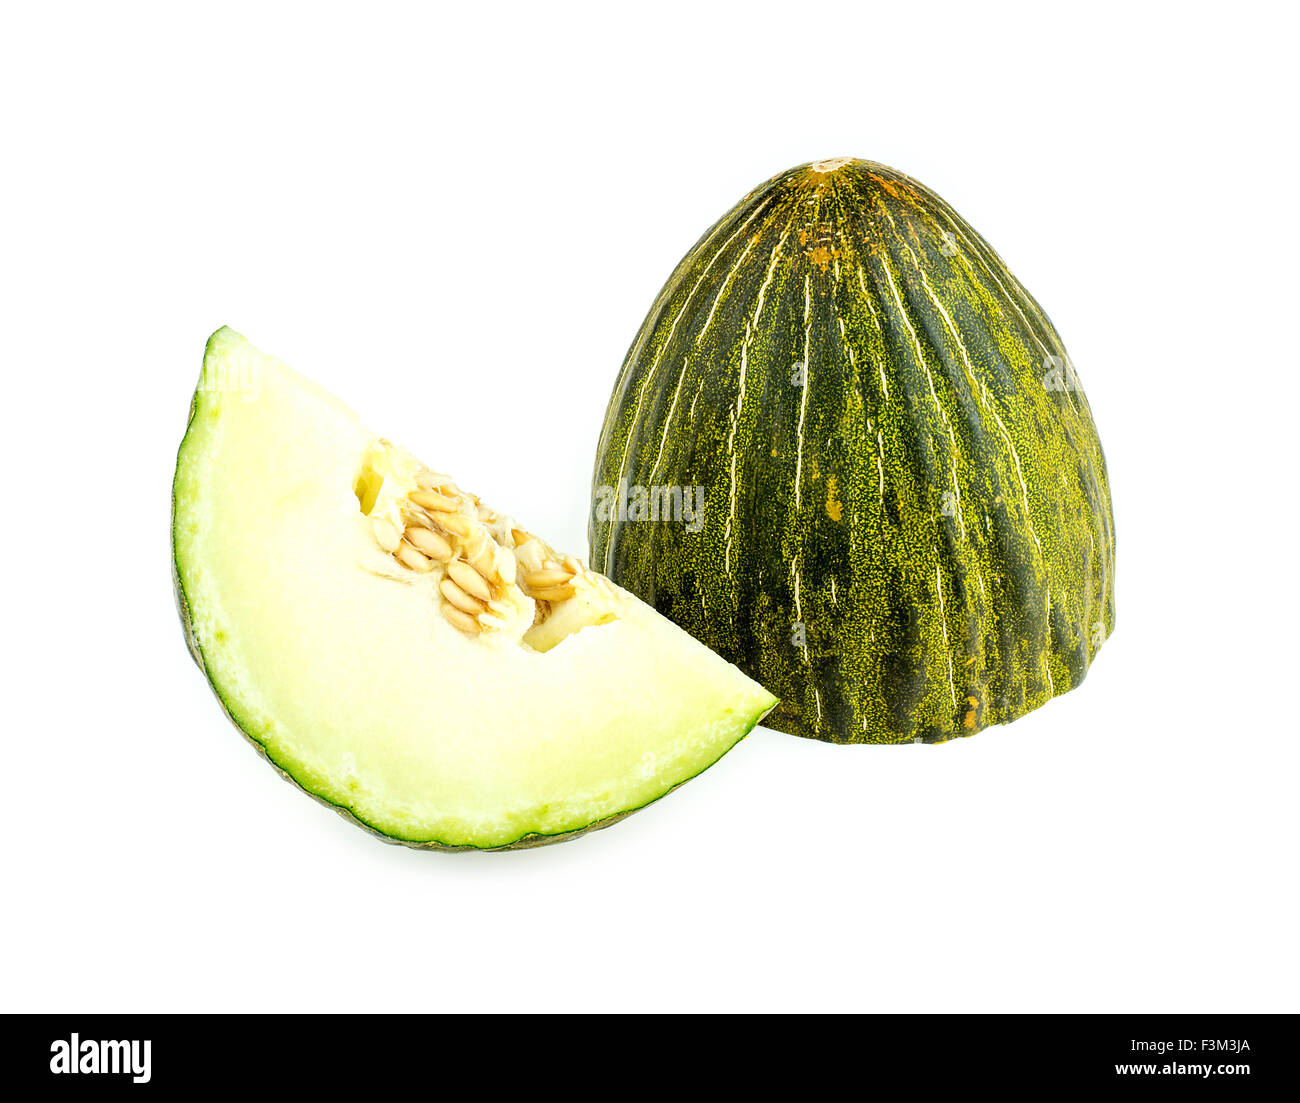 Cut piel de sapo melon isolated Stock Photo